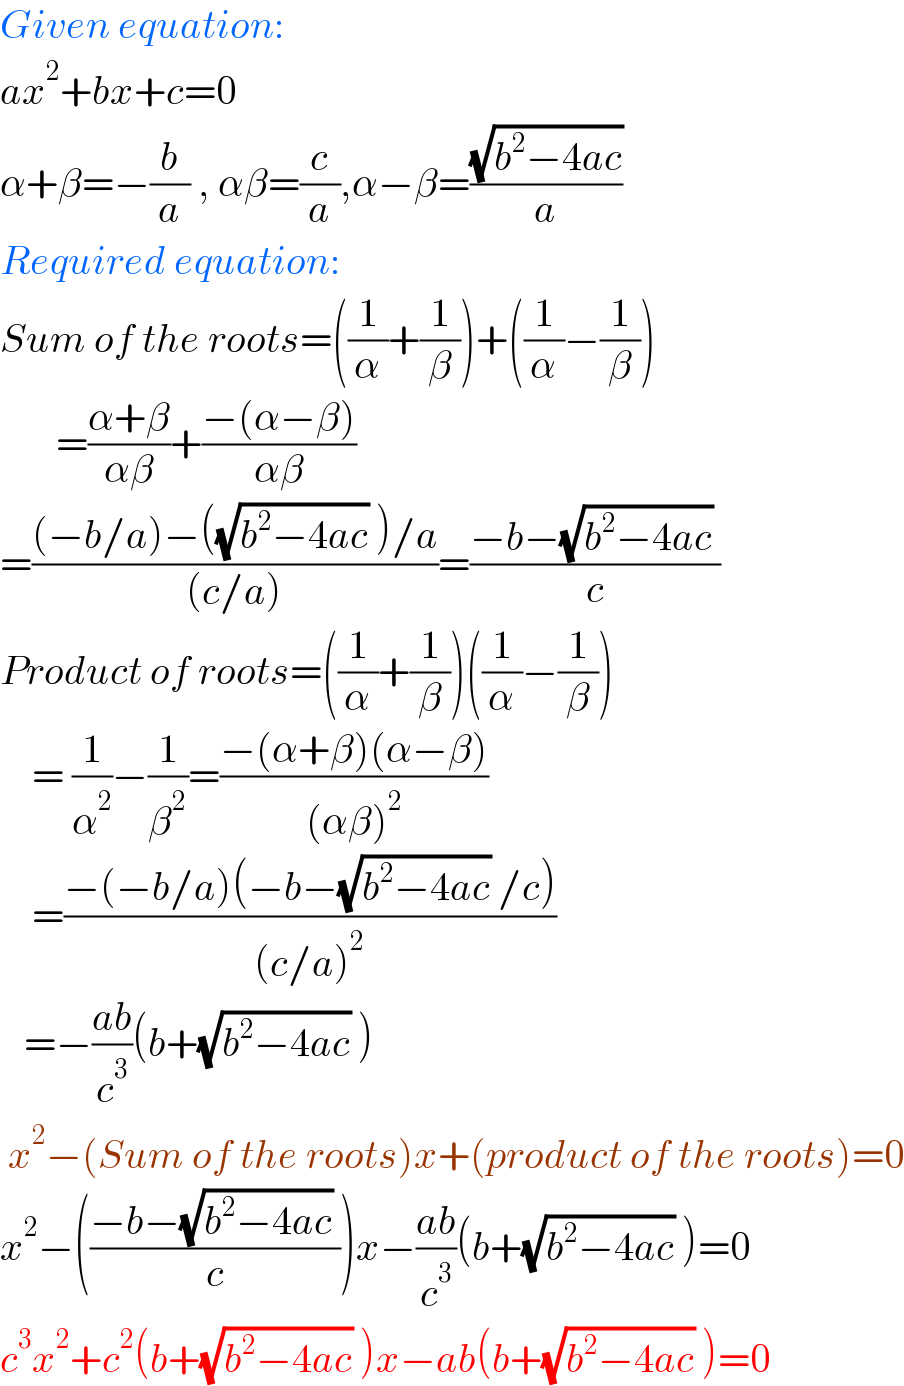 Given equation:  ax^2 +bx+c=0  α+β=−(b/a) , αβ=(c/a),α−β=((√(b^2 −4ac))/a)  Required equation:  Sum of the roots=((1/α)+(1/β))+((1/α)−(1/β))         =((α+β)/(αβ))+((−(α−β))/(αβ))  =(((−b/a)−((√(b^2 −4ac)) )/a)/((c/a)))=((−b−(√(b^2 −4ac)) )/c)  Product of roots=((1/α)+(1/β))((1/α)−(1/β))      = (1/α^2 )−(1/β^2 )=((−(α+β)(α−β))/((αβ)^2 ))      =((−(−b/a)(−b−(√(b^2 −4ac)) /c))/((c/a)^2 ))     =−((ab)/c^3 )(b+(√(b^2 −4ac)) )   x^2 −(Sum of the roots)x+(product of the roots)=0  x^2 −(((−b−(√(b^2 −4ac)) )/c))x−((ab)/c^3 )(b+(√(b^2 −4ac)) )=0  c^3 x^2 +c^2 (b+(√(b^2 −4ac)) )x−ab(b+(√(b^2 −4ac)) )=0  